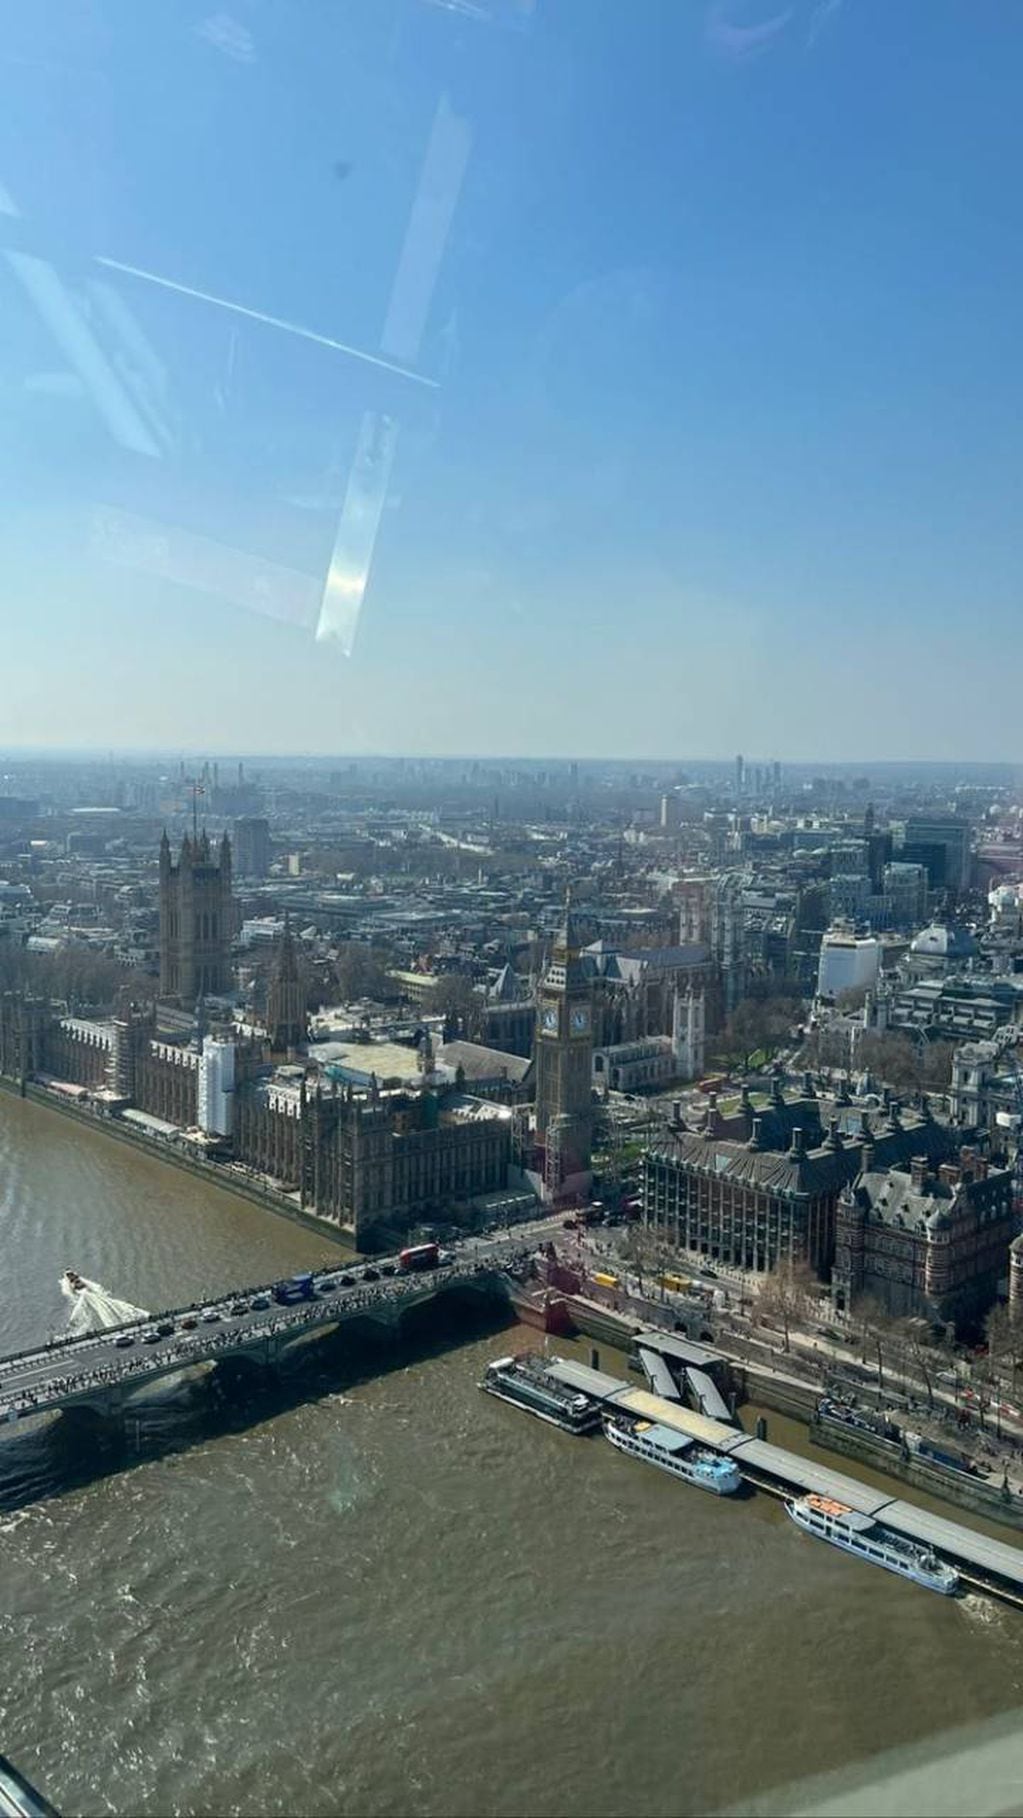 Desde la cima del edificio Walkie Talkie se puede disfrutar de una increíble vista panorámica de la capital inglesa.